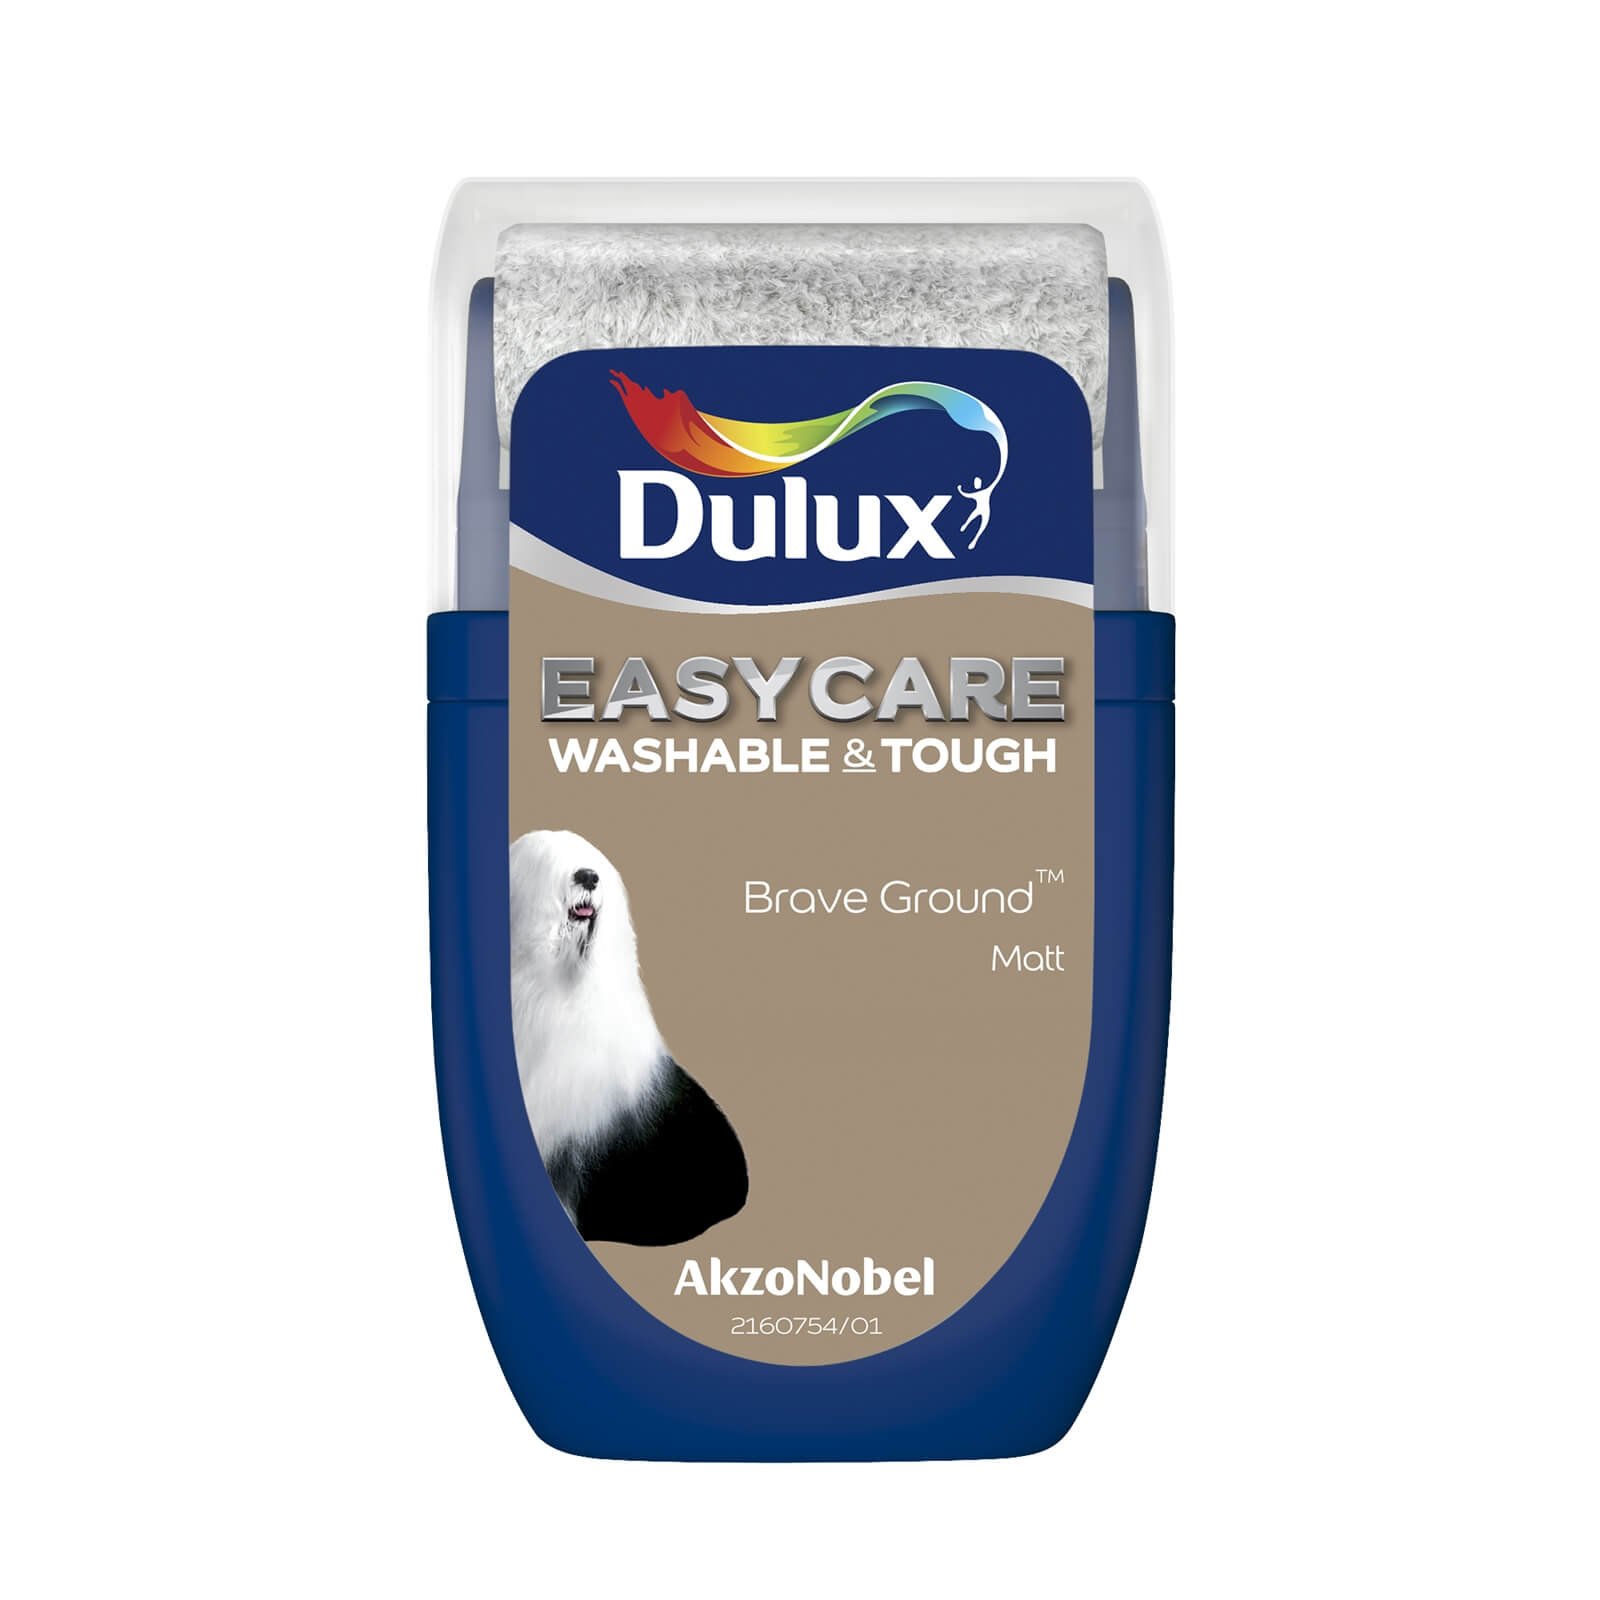 Dulux Easycare Washable & Tough Matt Paint Brave Ground - Tester 30ml